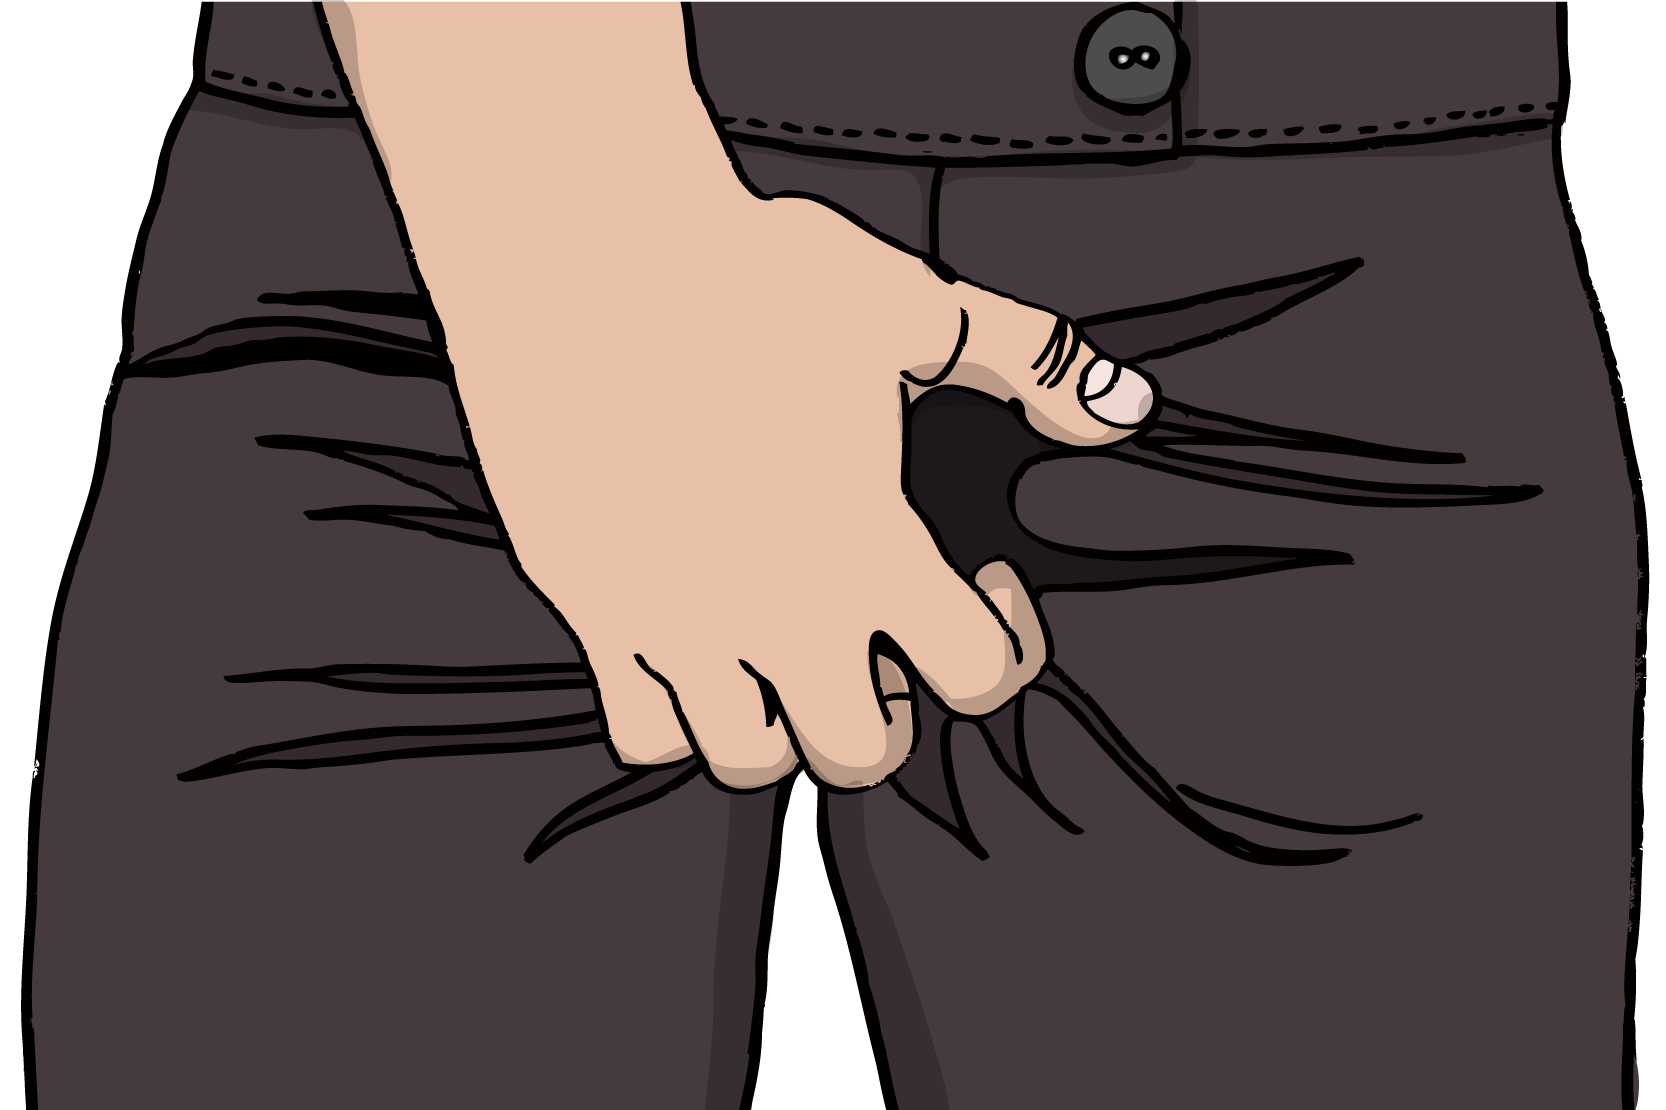 Person som står med handen innanför byxorna och kliar sig, illustration.